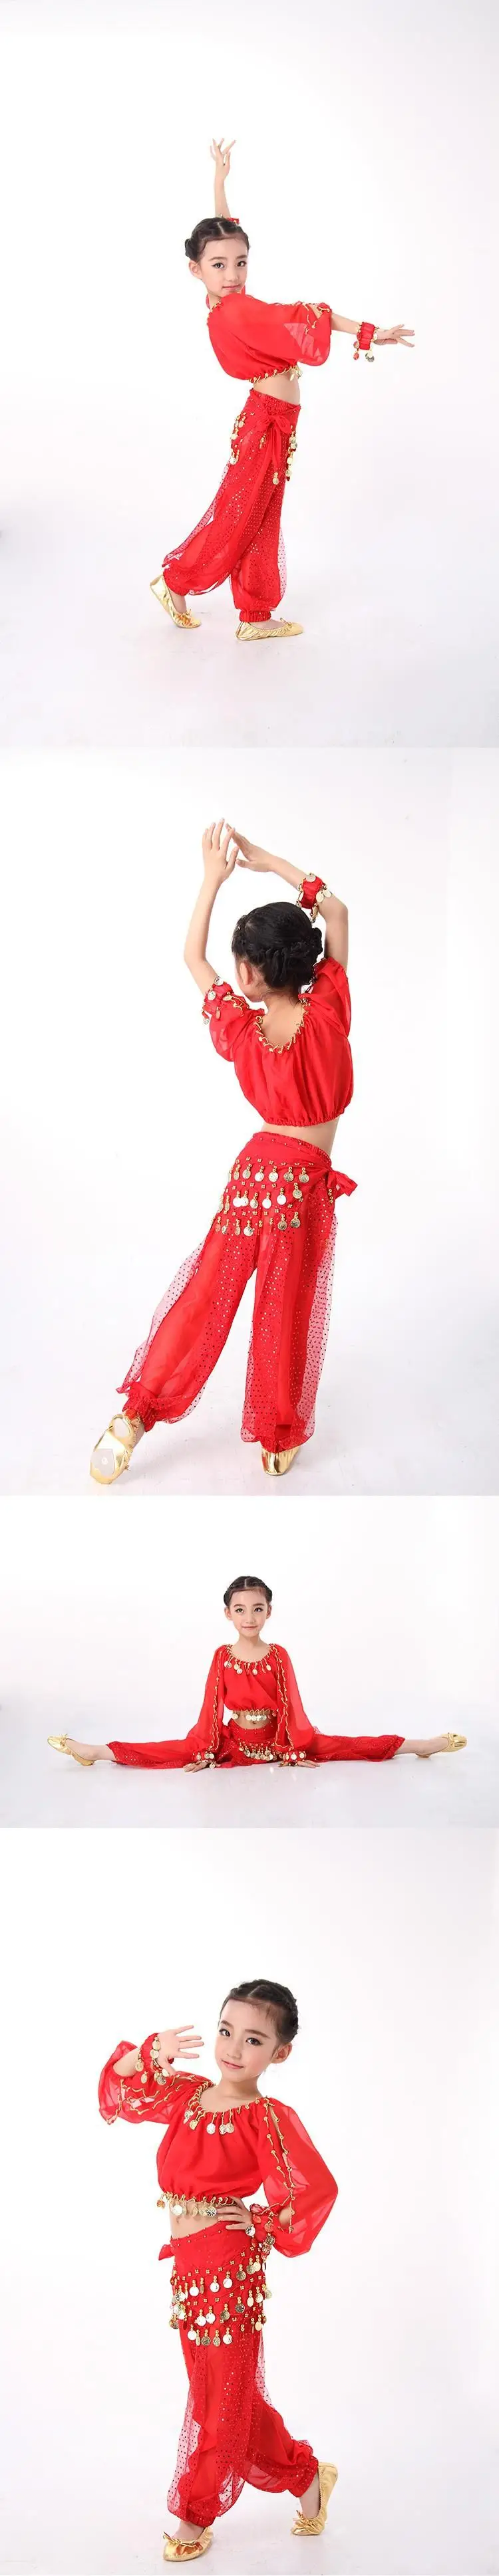 4 шт./компл. танец живота костюмы индийские платье для Для детей костюмы танец живота Болливуд танцевальные подарок для девочек S-XXL одежда с